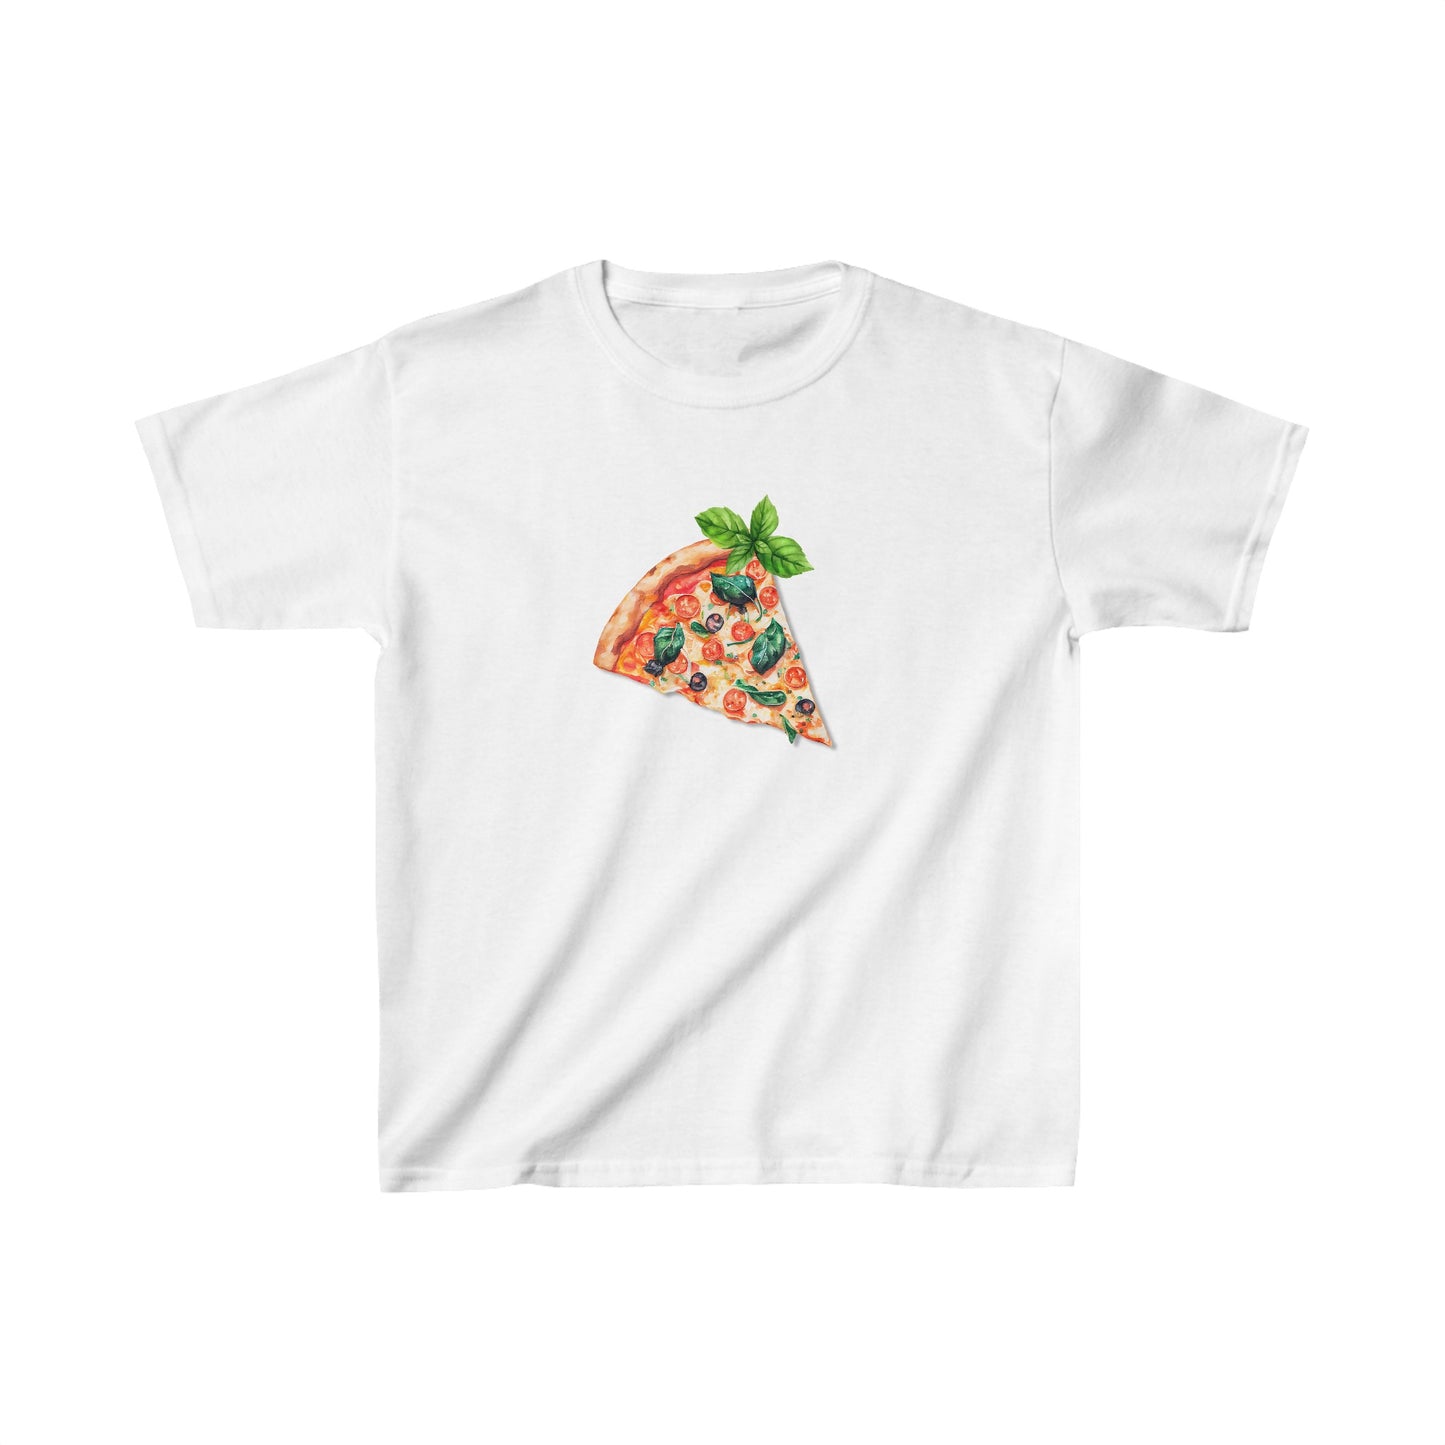 Women's Graphic Baby Tee Retro Pizza Slice Shirt.